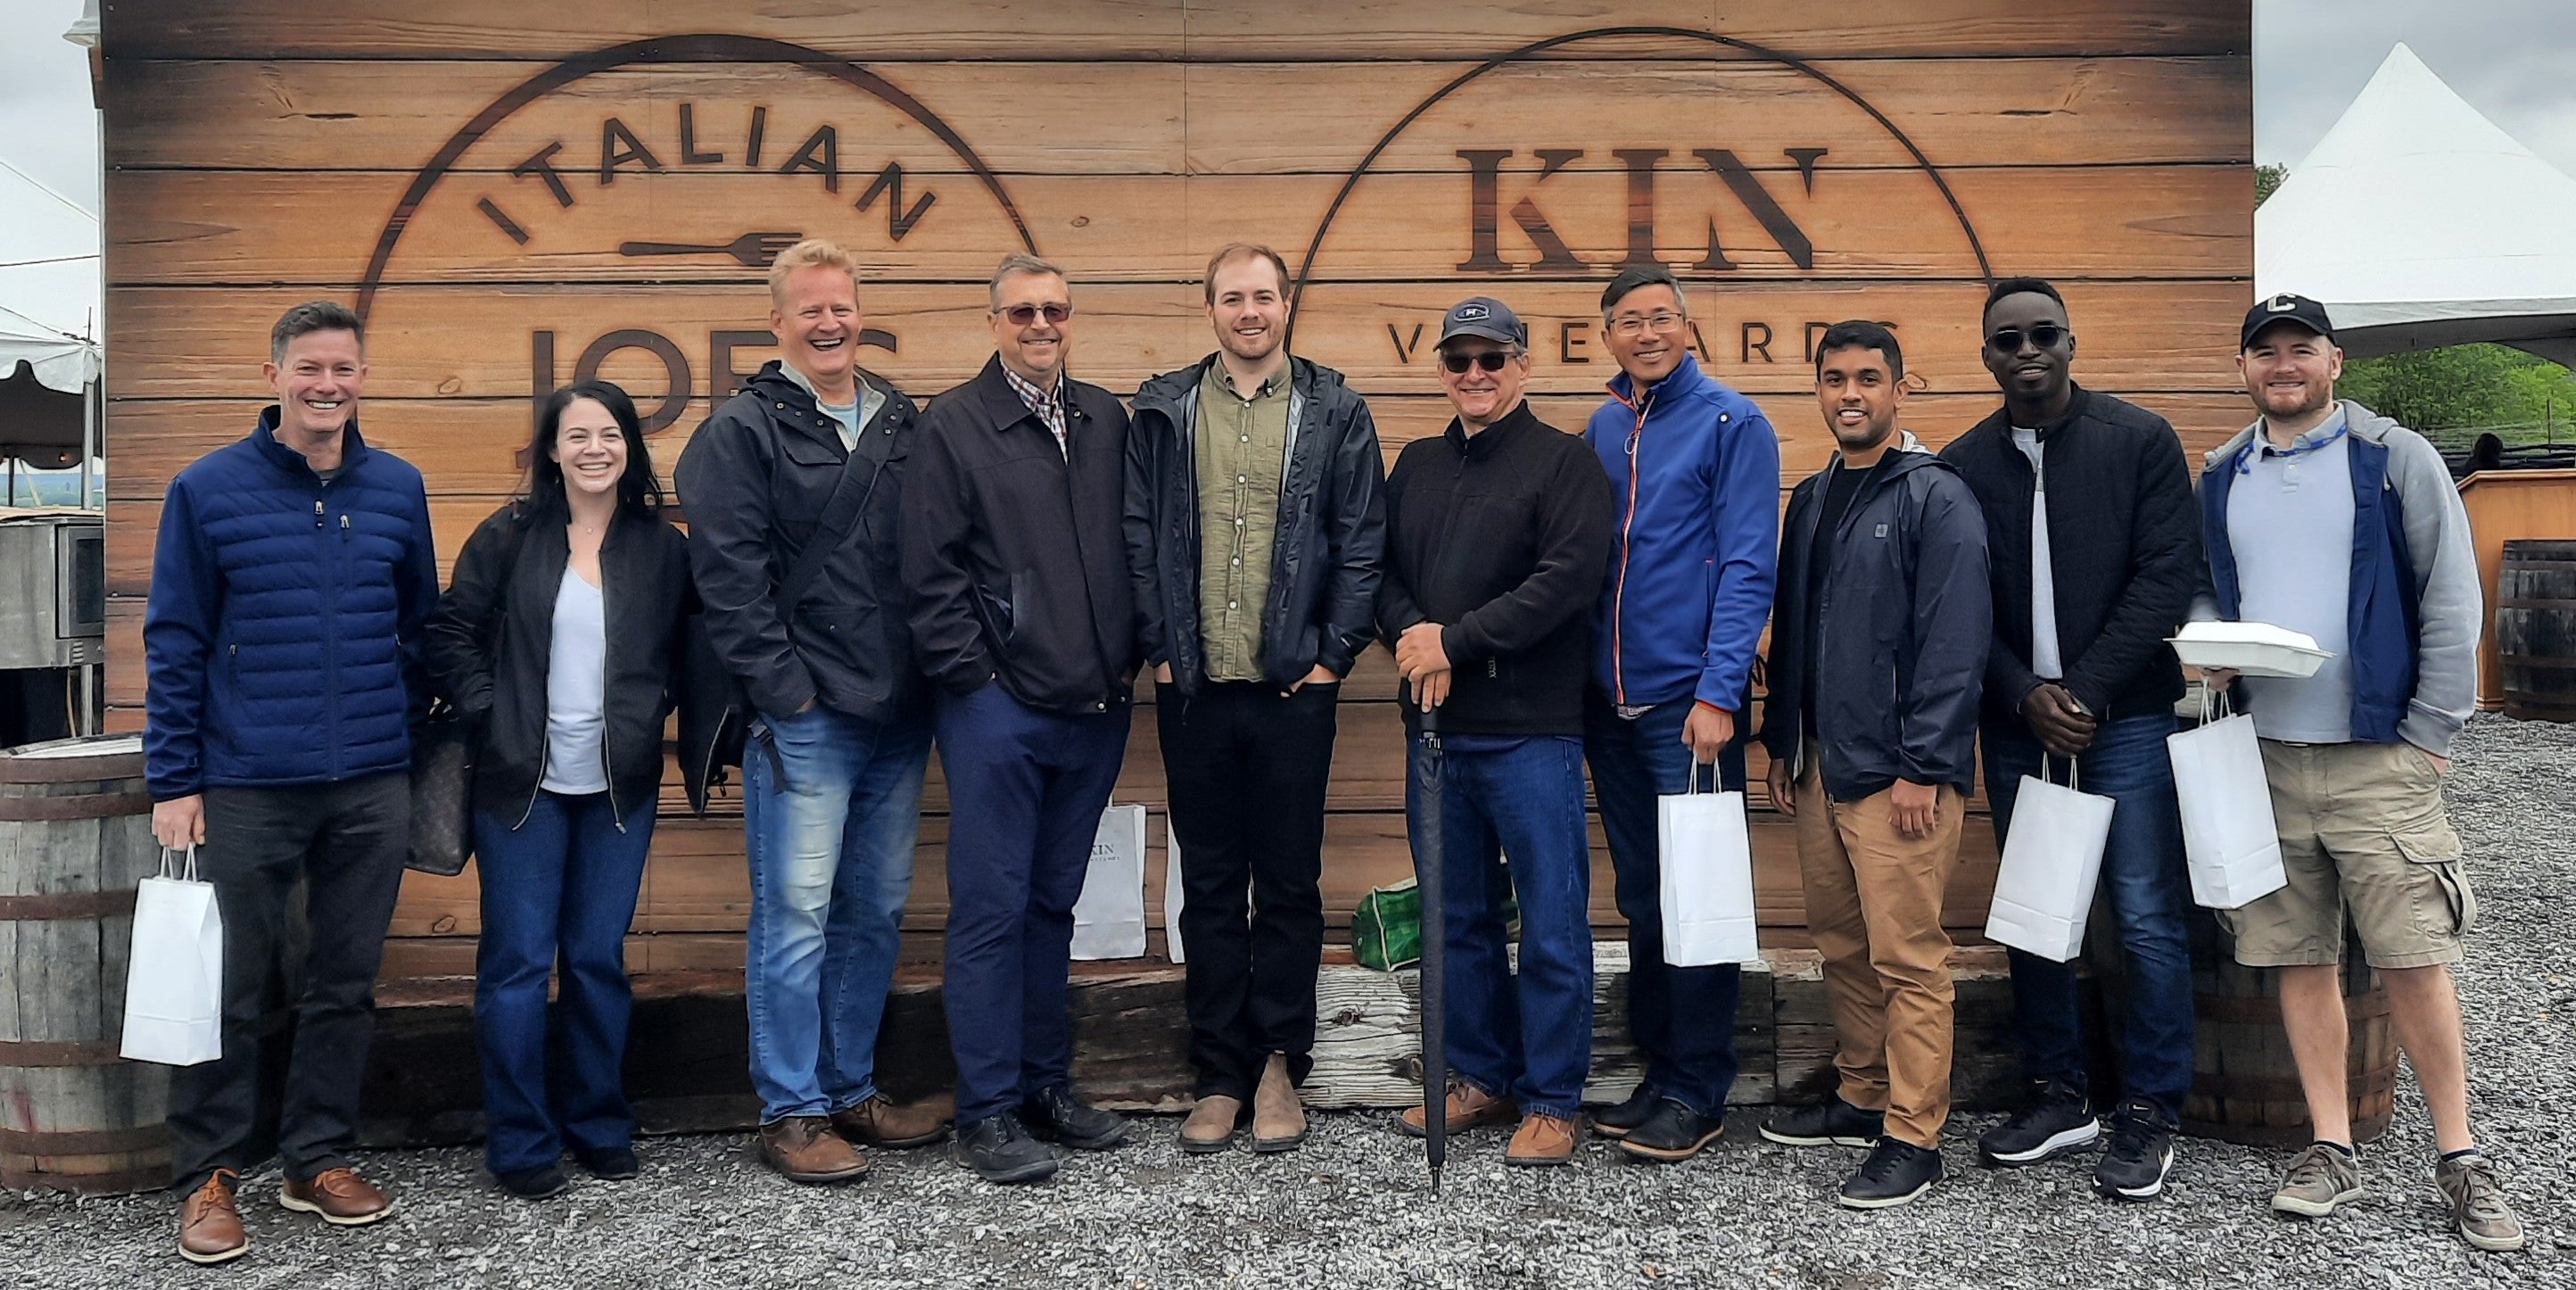 Corporate wine tour stops at Kin Vineyard in Carp, Ontario